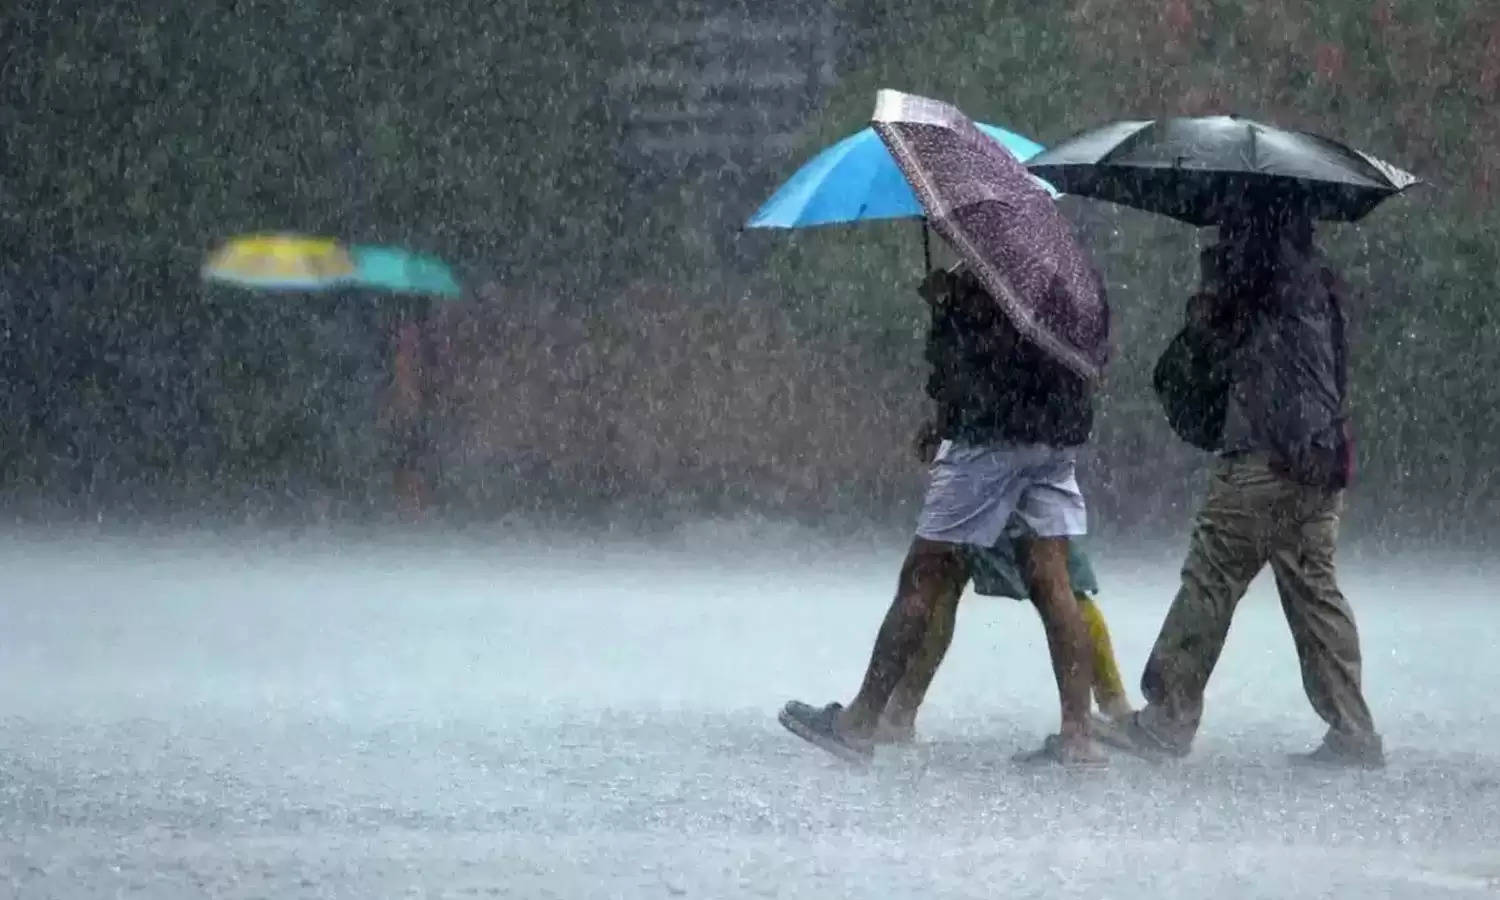 Haryana Weather Update : प्रदेश के 9 जिलों में बारिश का अलर्ट जारी, सभी जिलों में 22 अगस्त तक बारिश होने की संभावना 